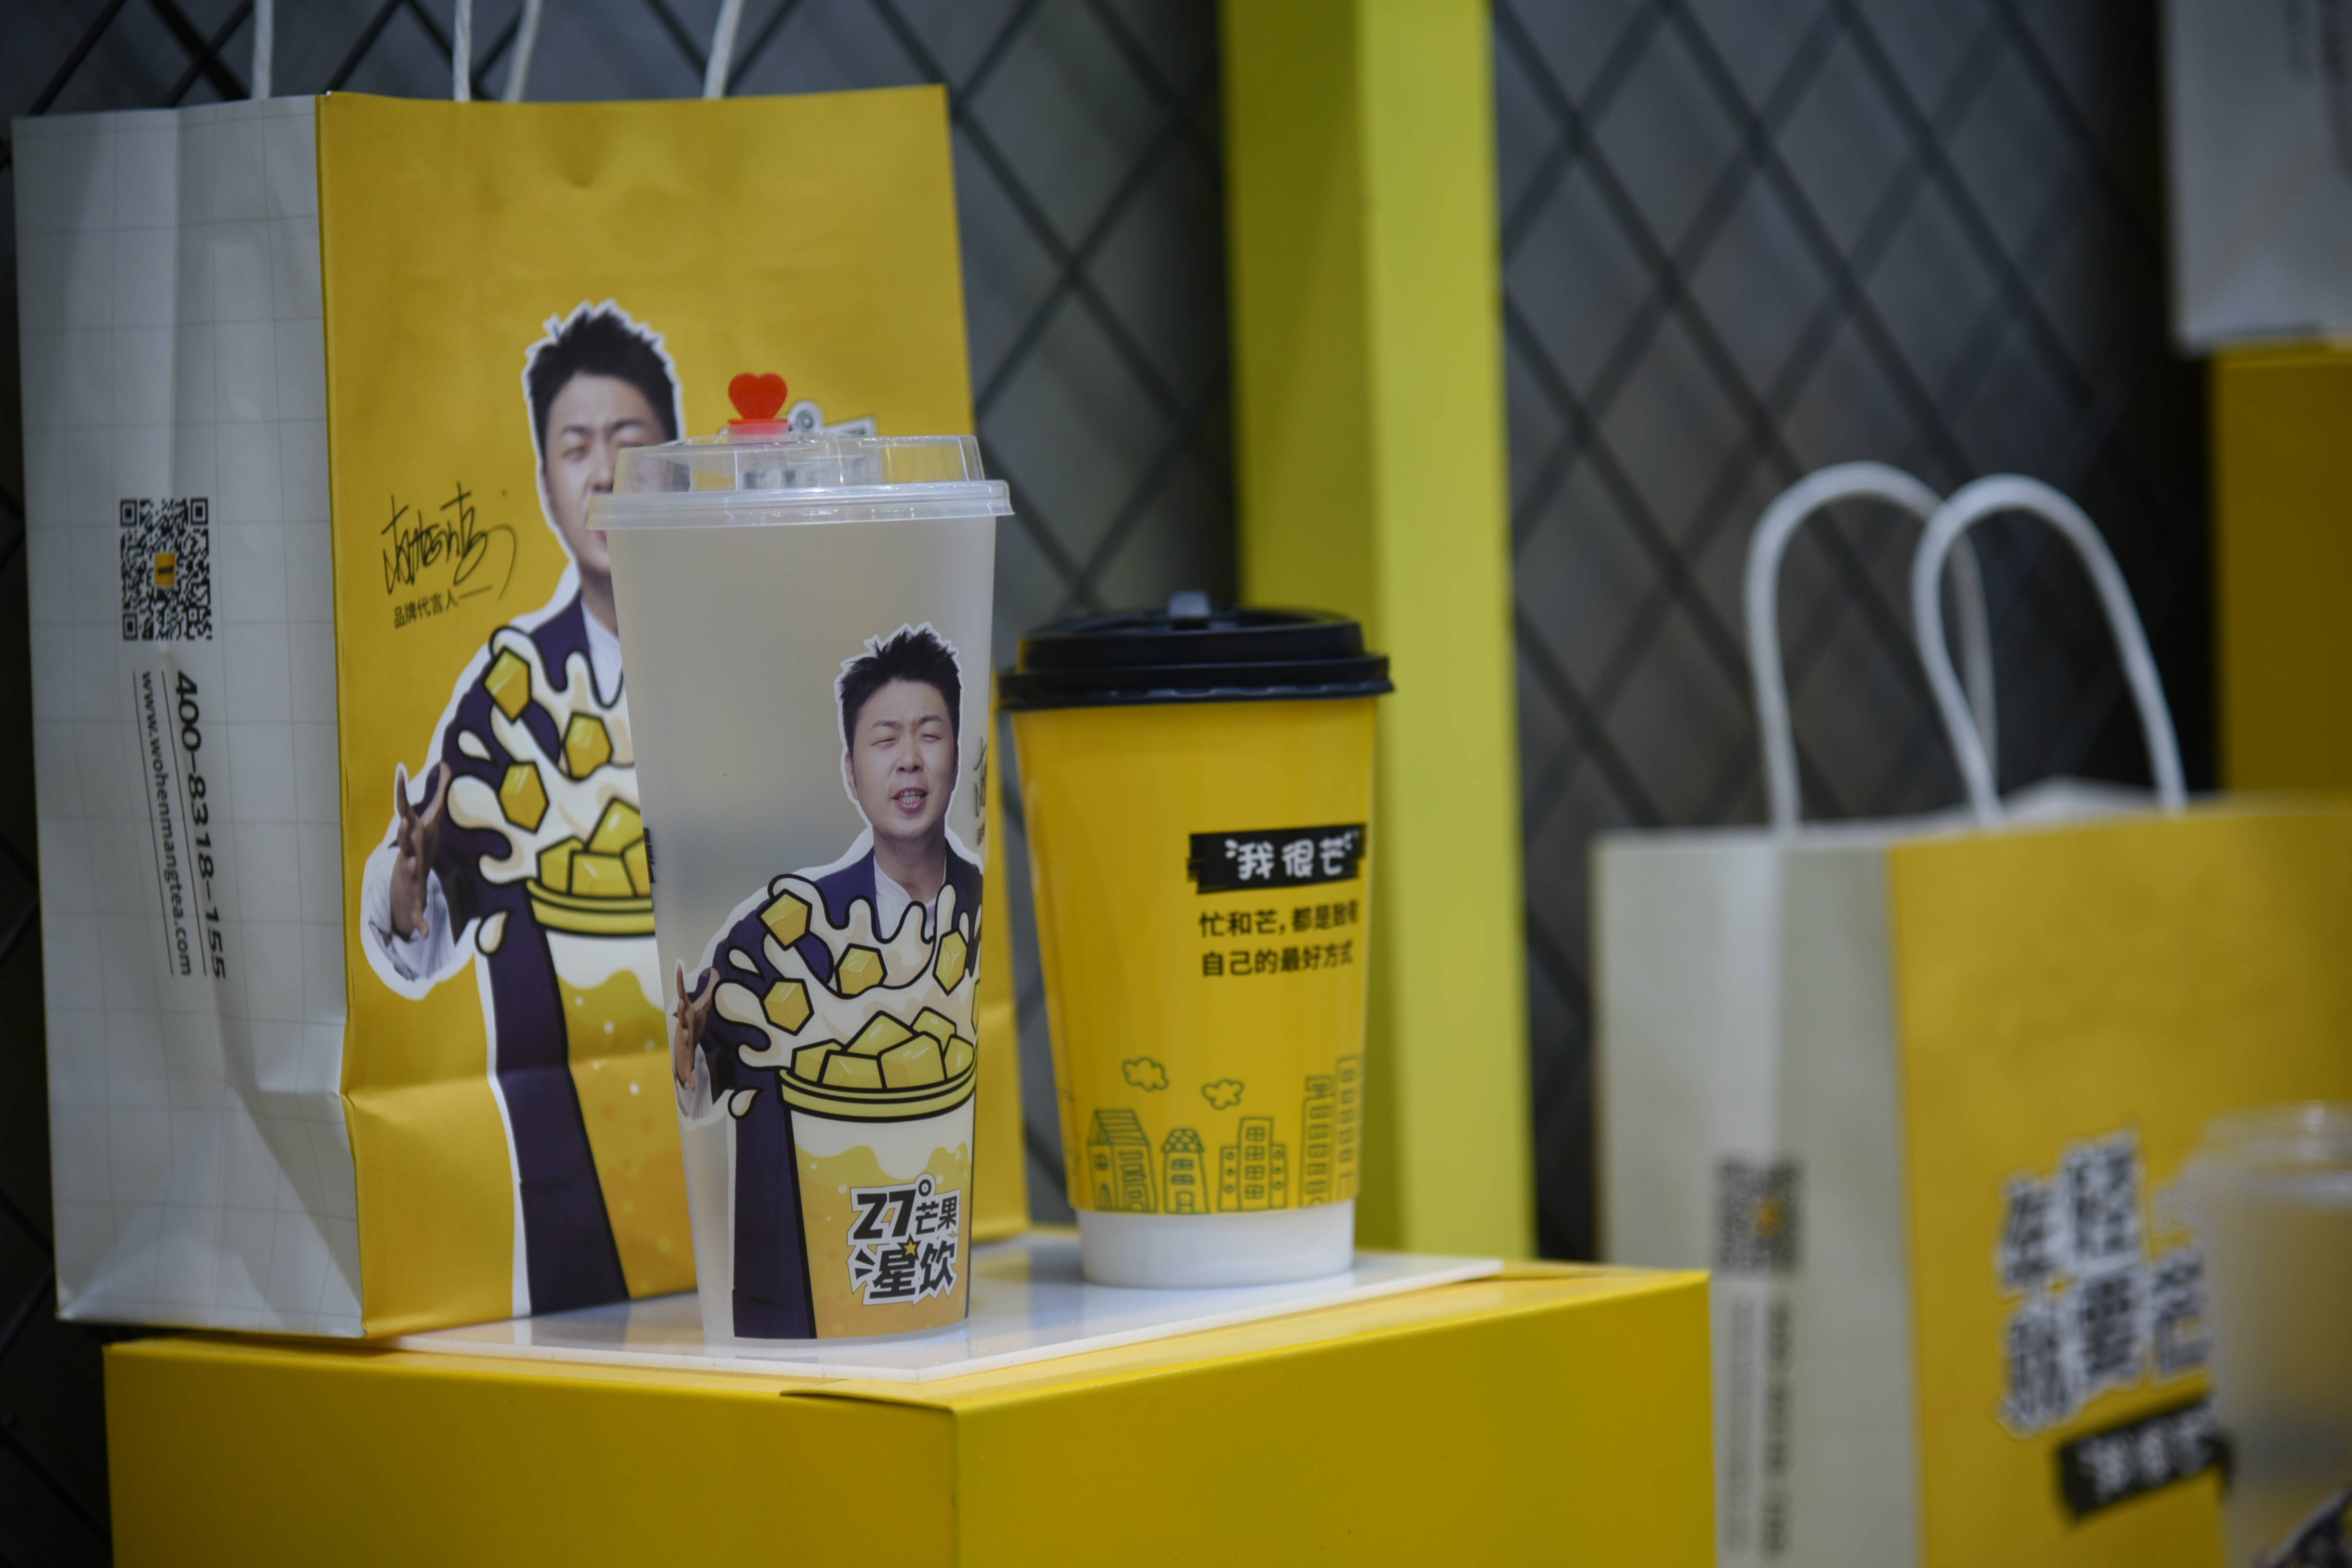 2021年茶饮时代正在升级,这家由杜海涛代言的奶茶店—